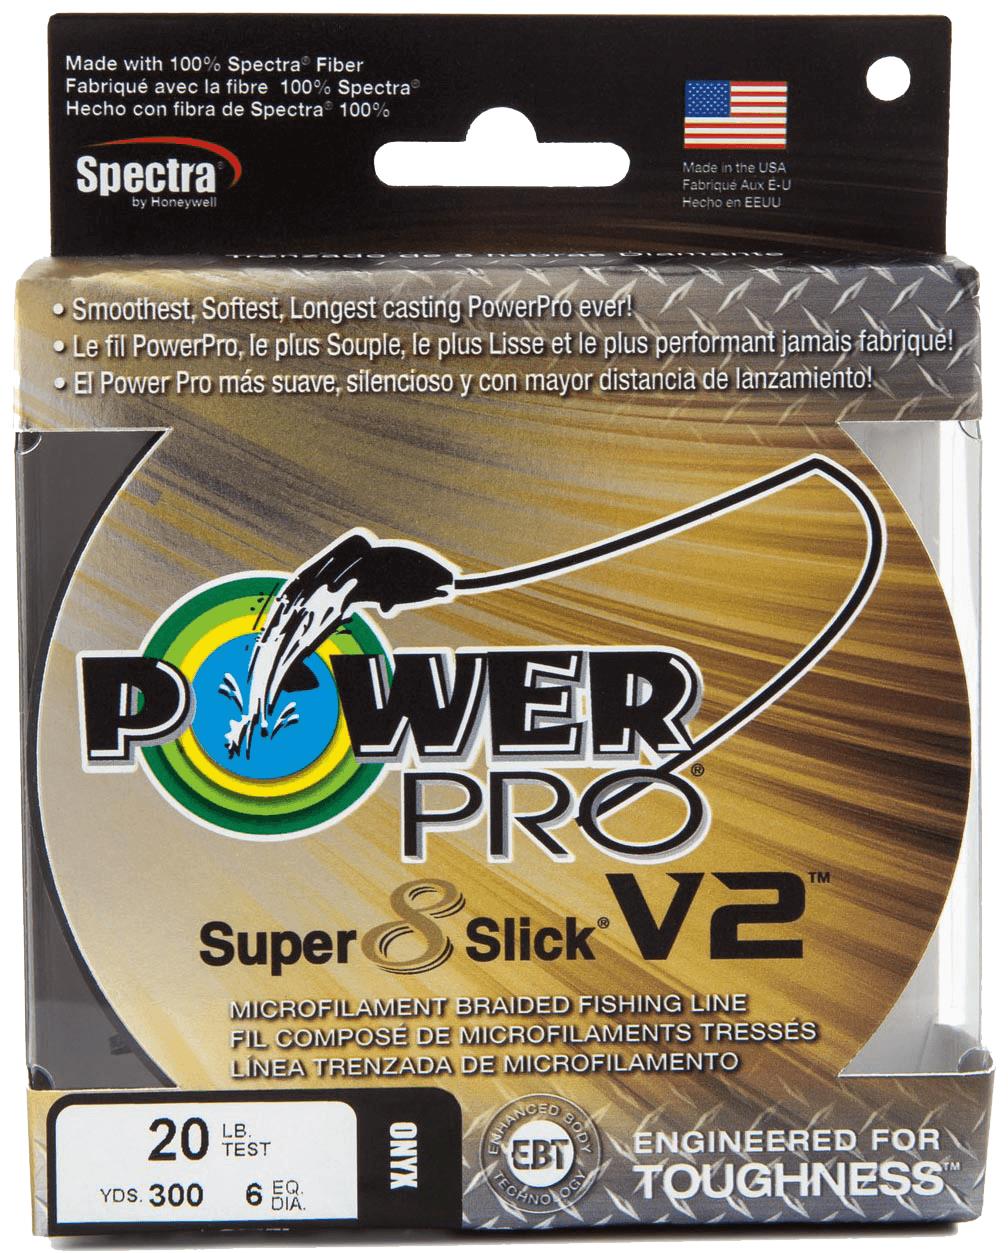 Power Pro Super Slick 30lb. - Aqua